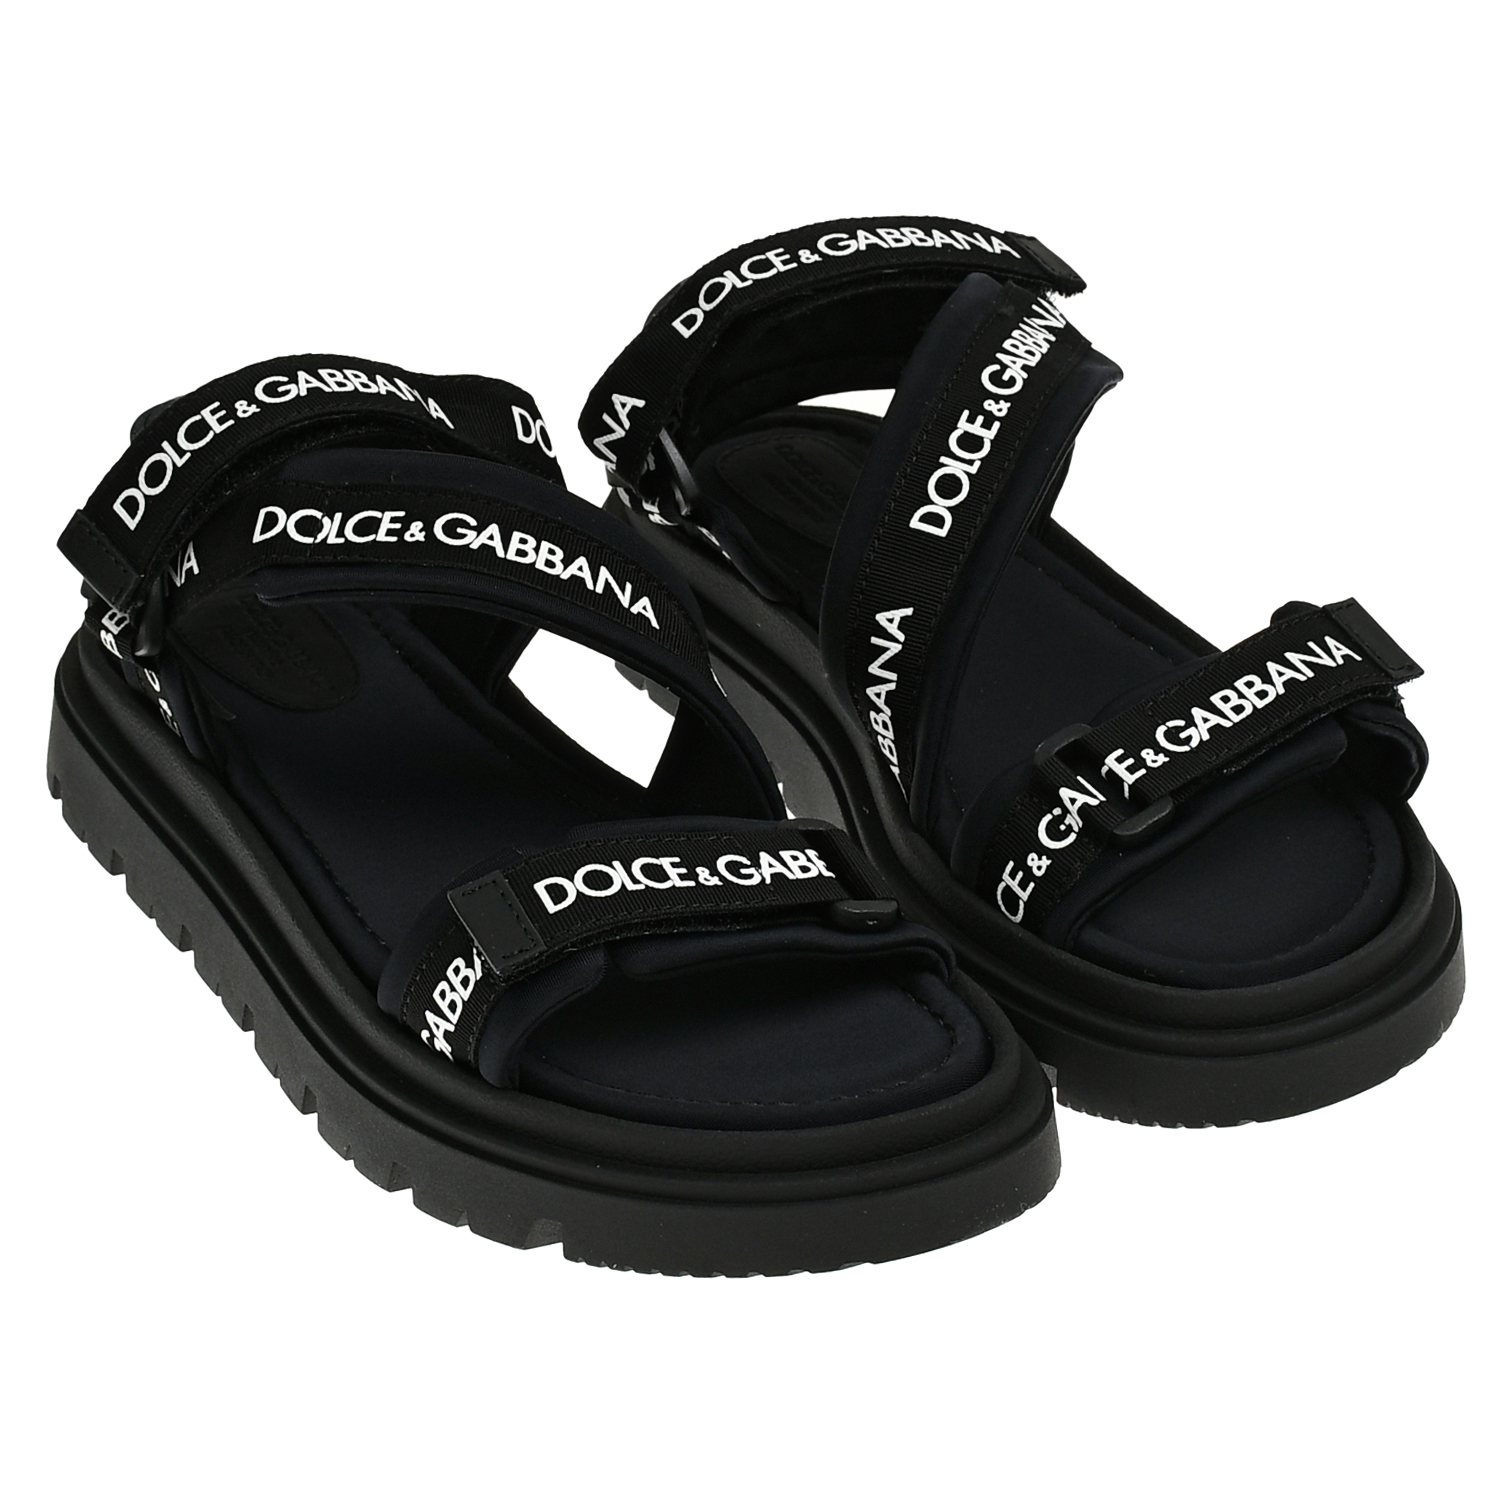 Сандалии черные на липучках с лого Dolce&Gabbana черные сандалии c металлическим лого dolce